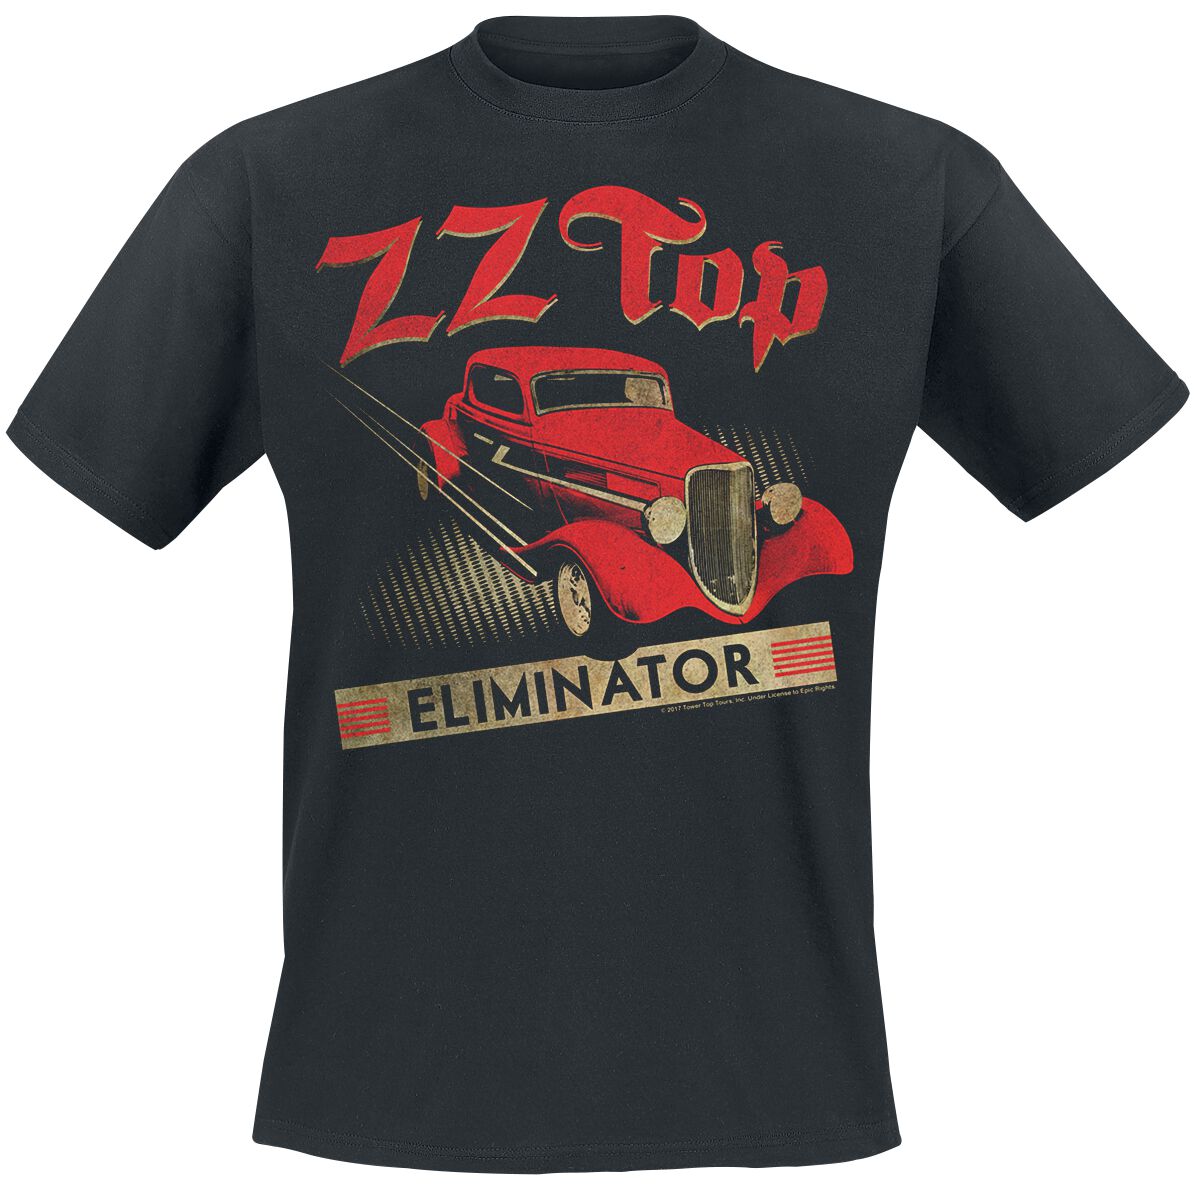 ZZ Top T-Shirt - Eliminator - S bis XXL - für Männer - Größe XXL - schwarz  - Lizenziertes Merchandise!